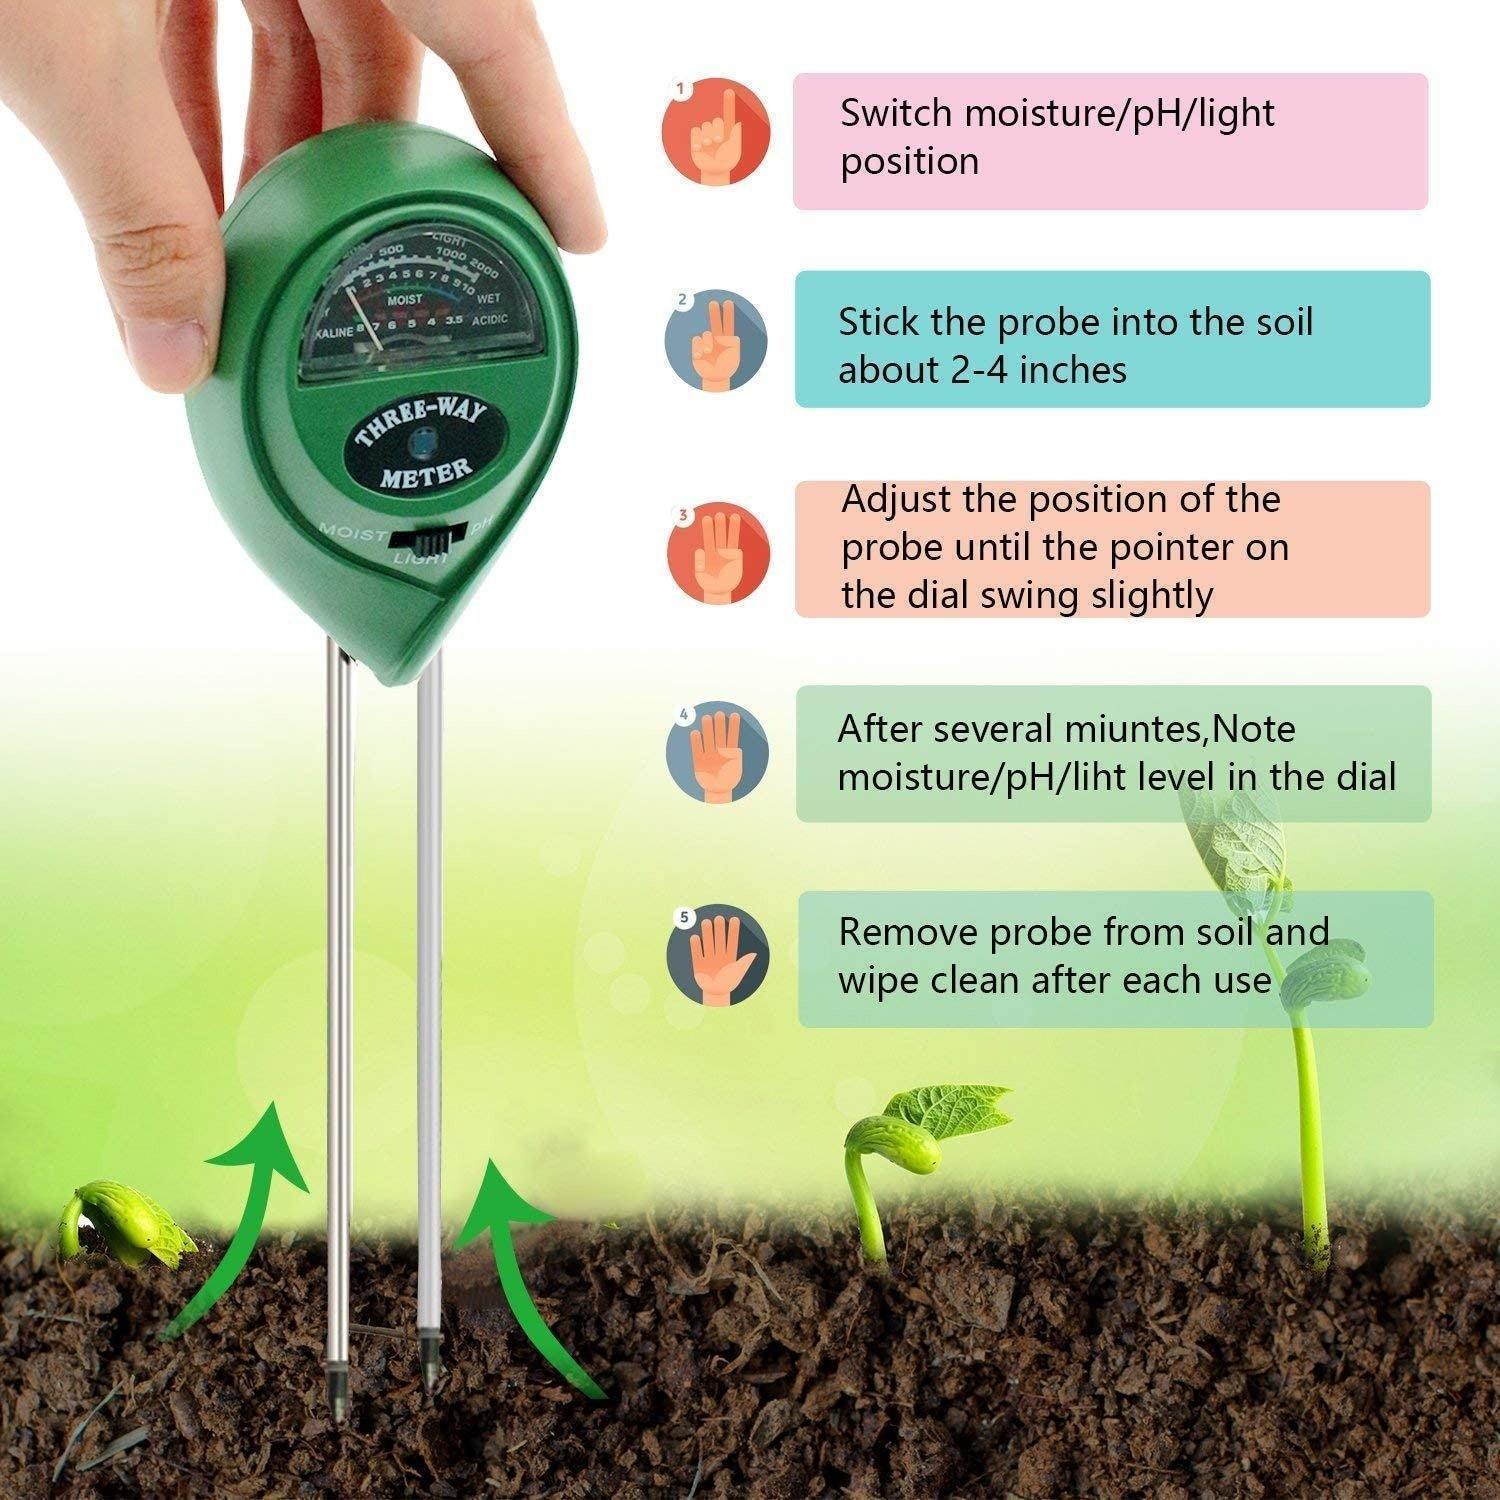 جهاز قياس رطوبة التربة والضوء ودرجة الحموضة 3 في 1 بدون بطارية